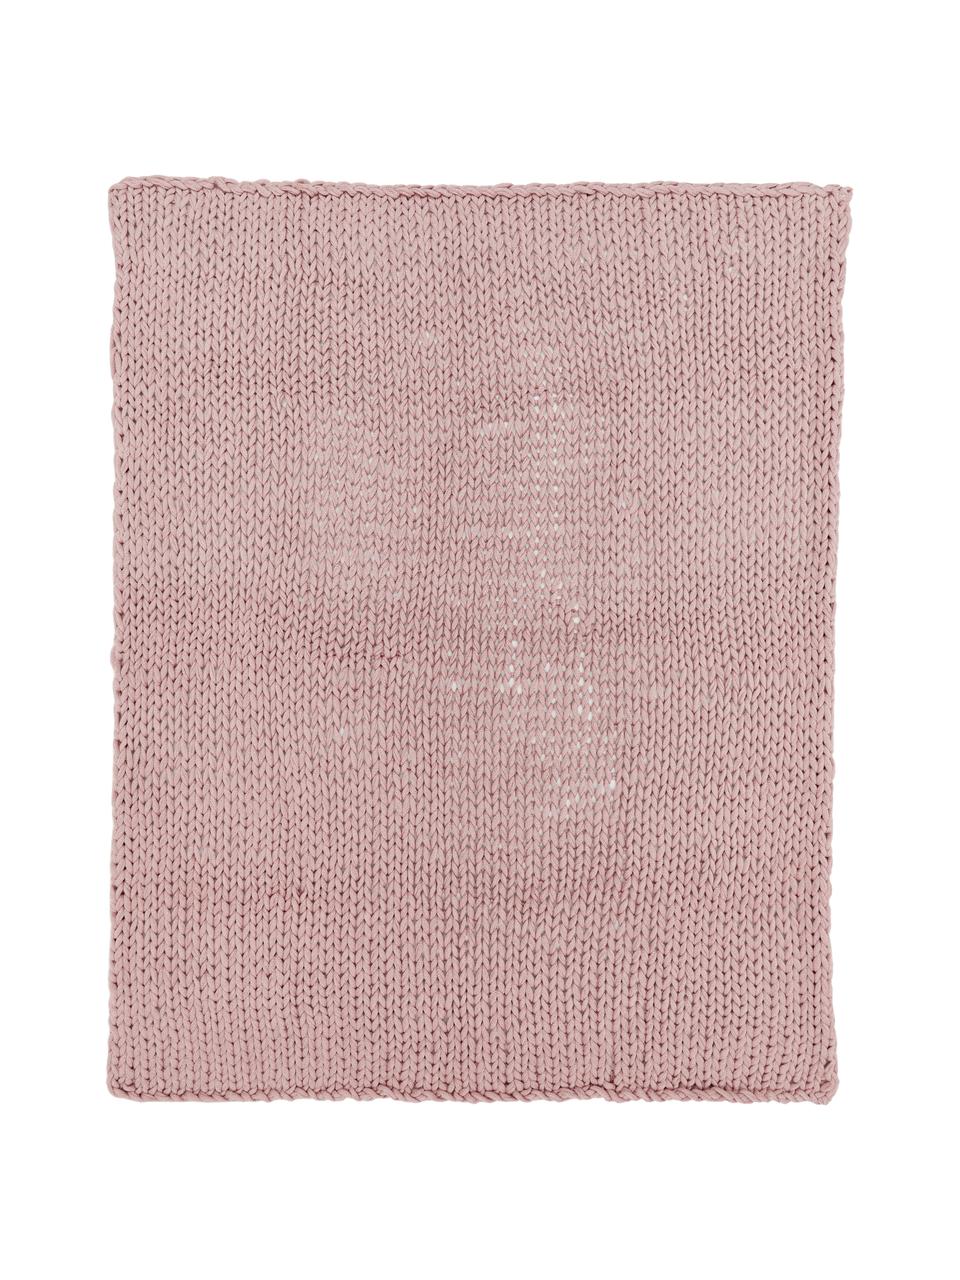 Plaid a maglia Adyna, 100% acrilico, Rosa, 150 x 200 cm